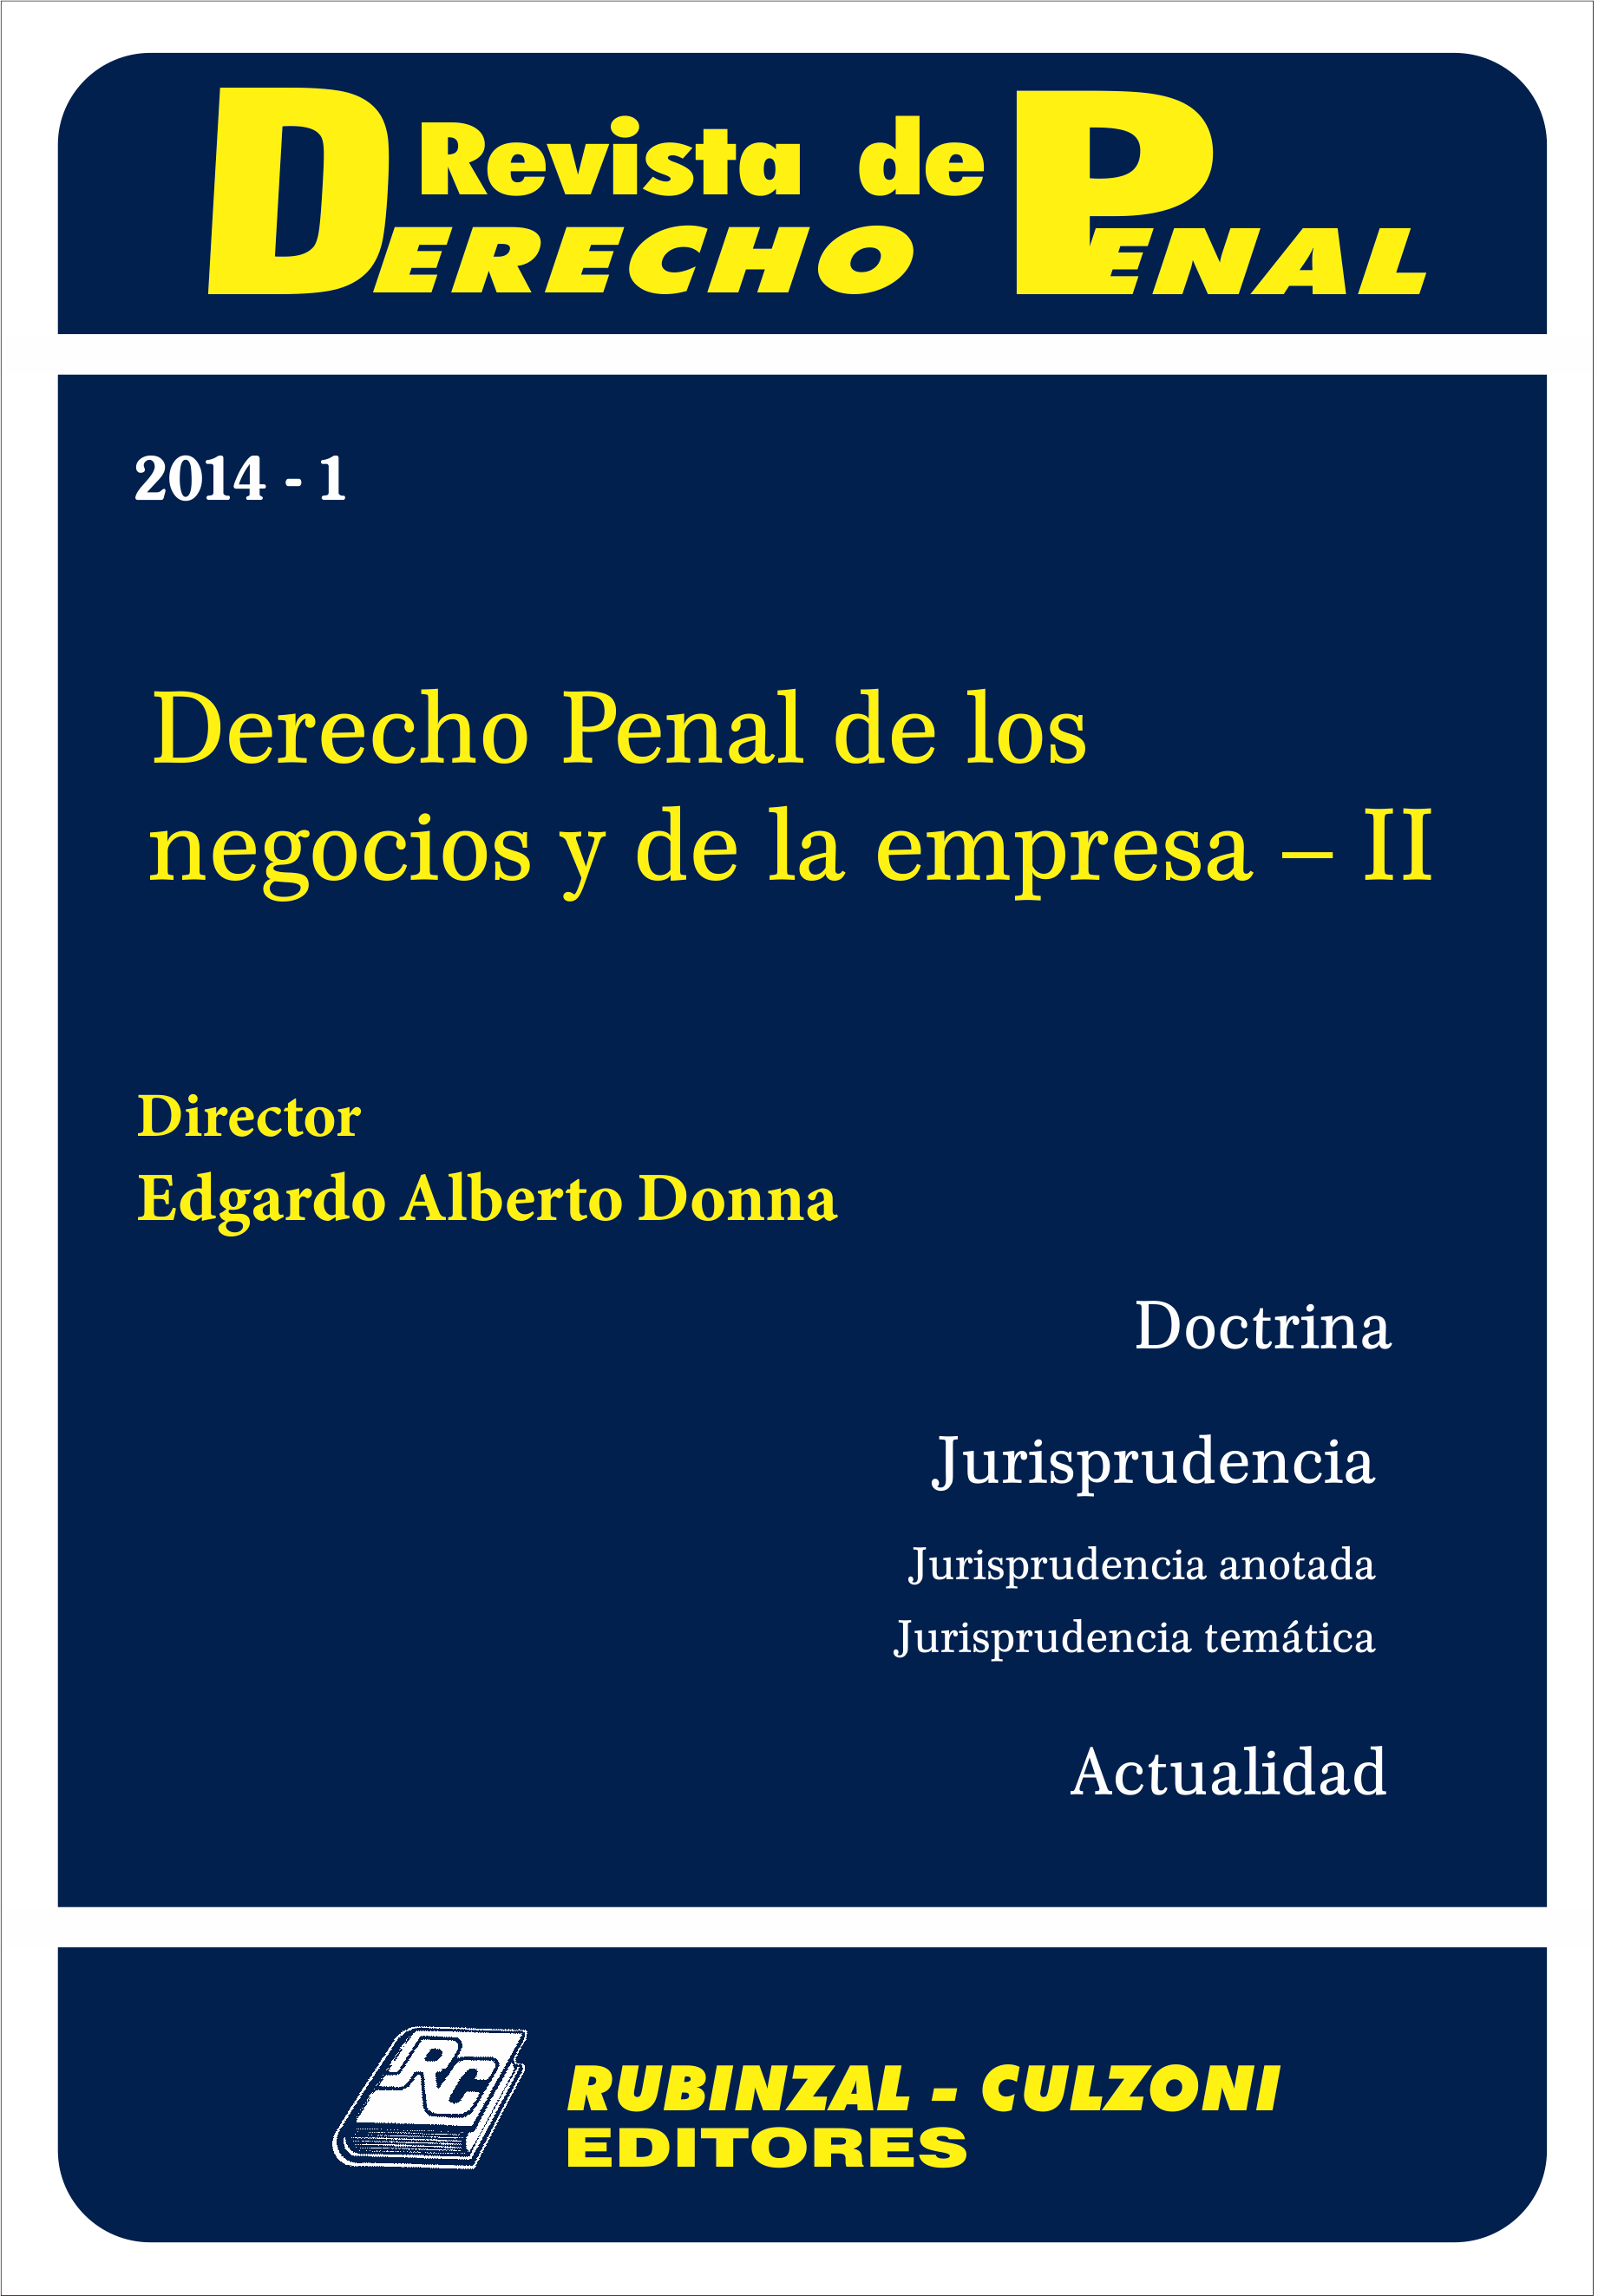 Revista de Derecho Penal - Derecho Penal de los negocios y de la empresa - II